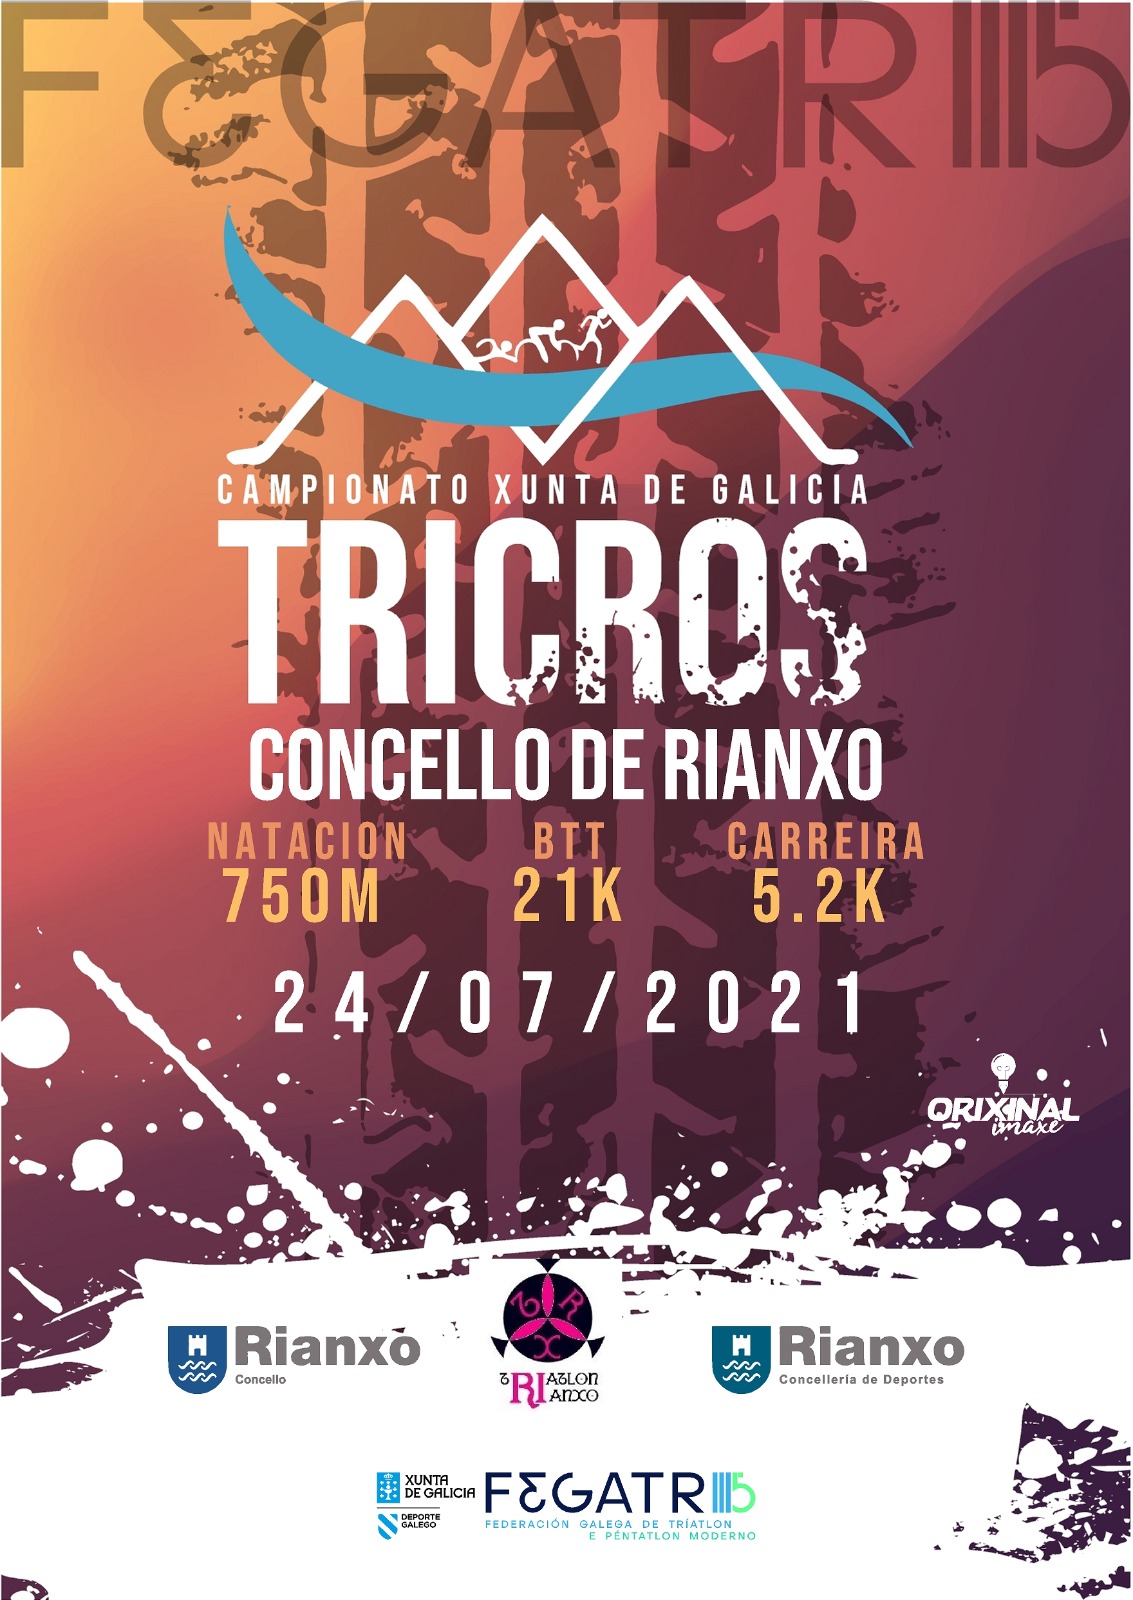 Campionato Xunta de Galicia Tricros concello de rianxo